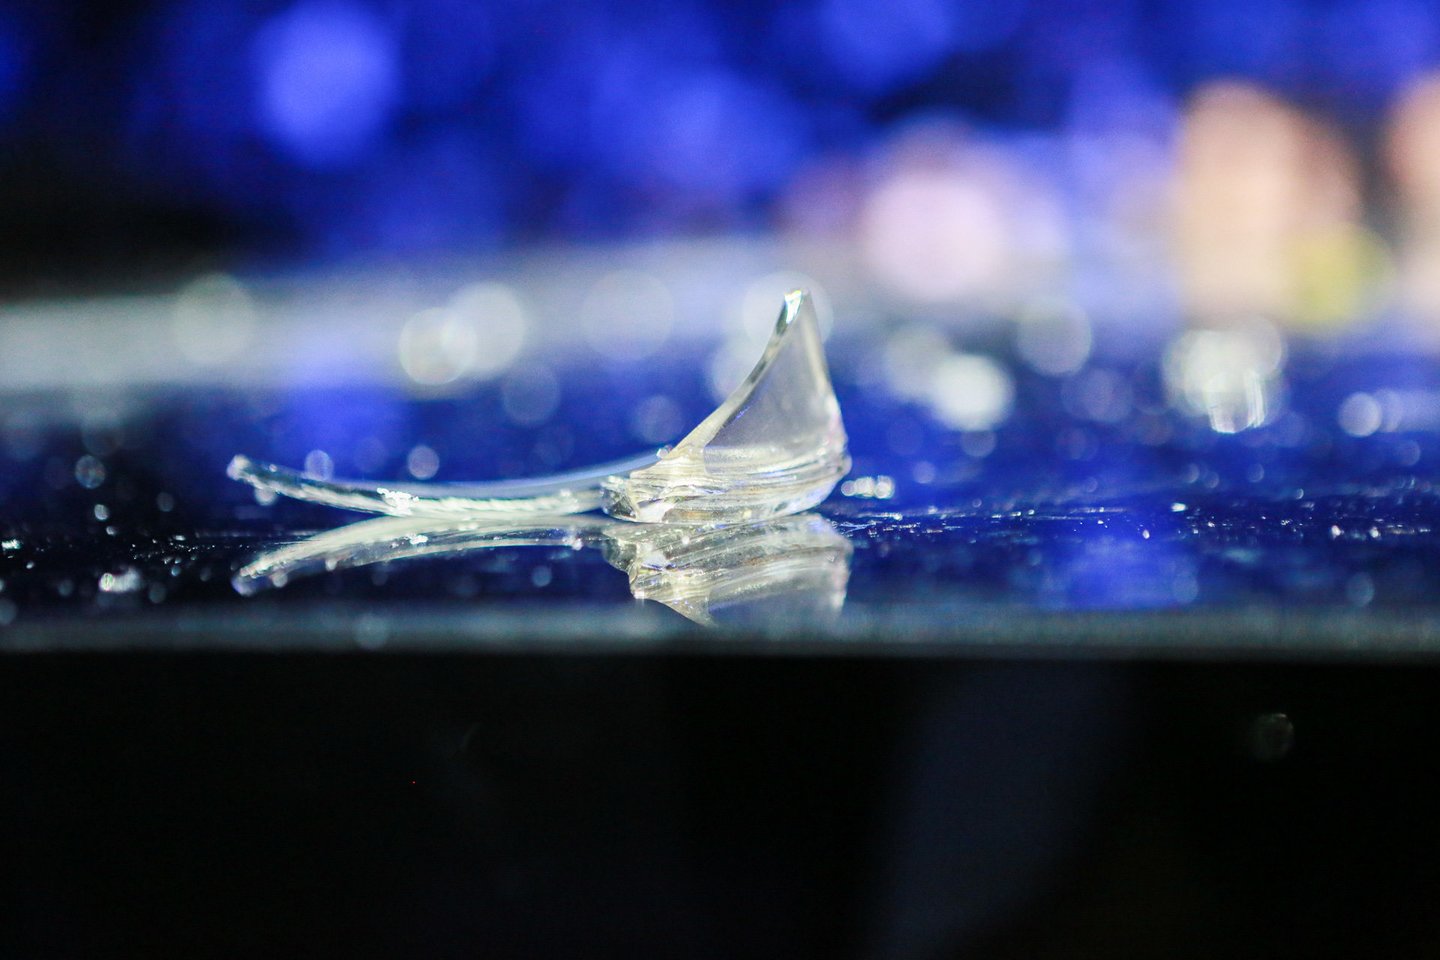  Renginio metu nukritus lempai ant scenos pažiro stiklo šukės.<br> G.Bitvinsko nuotr.